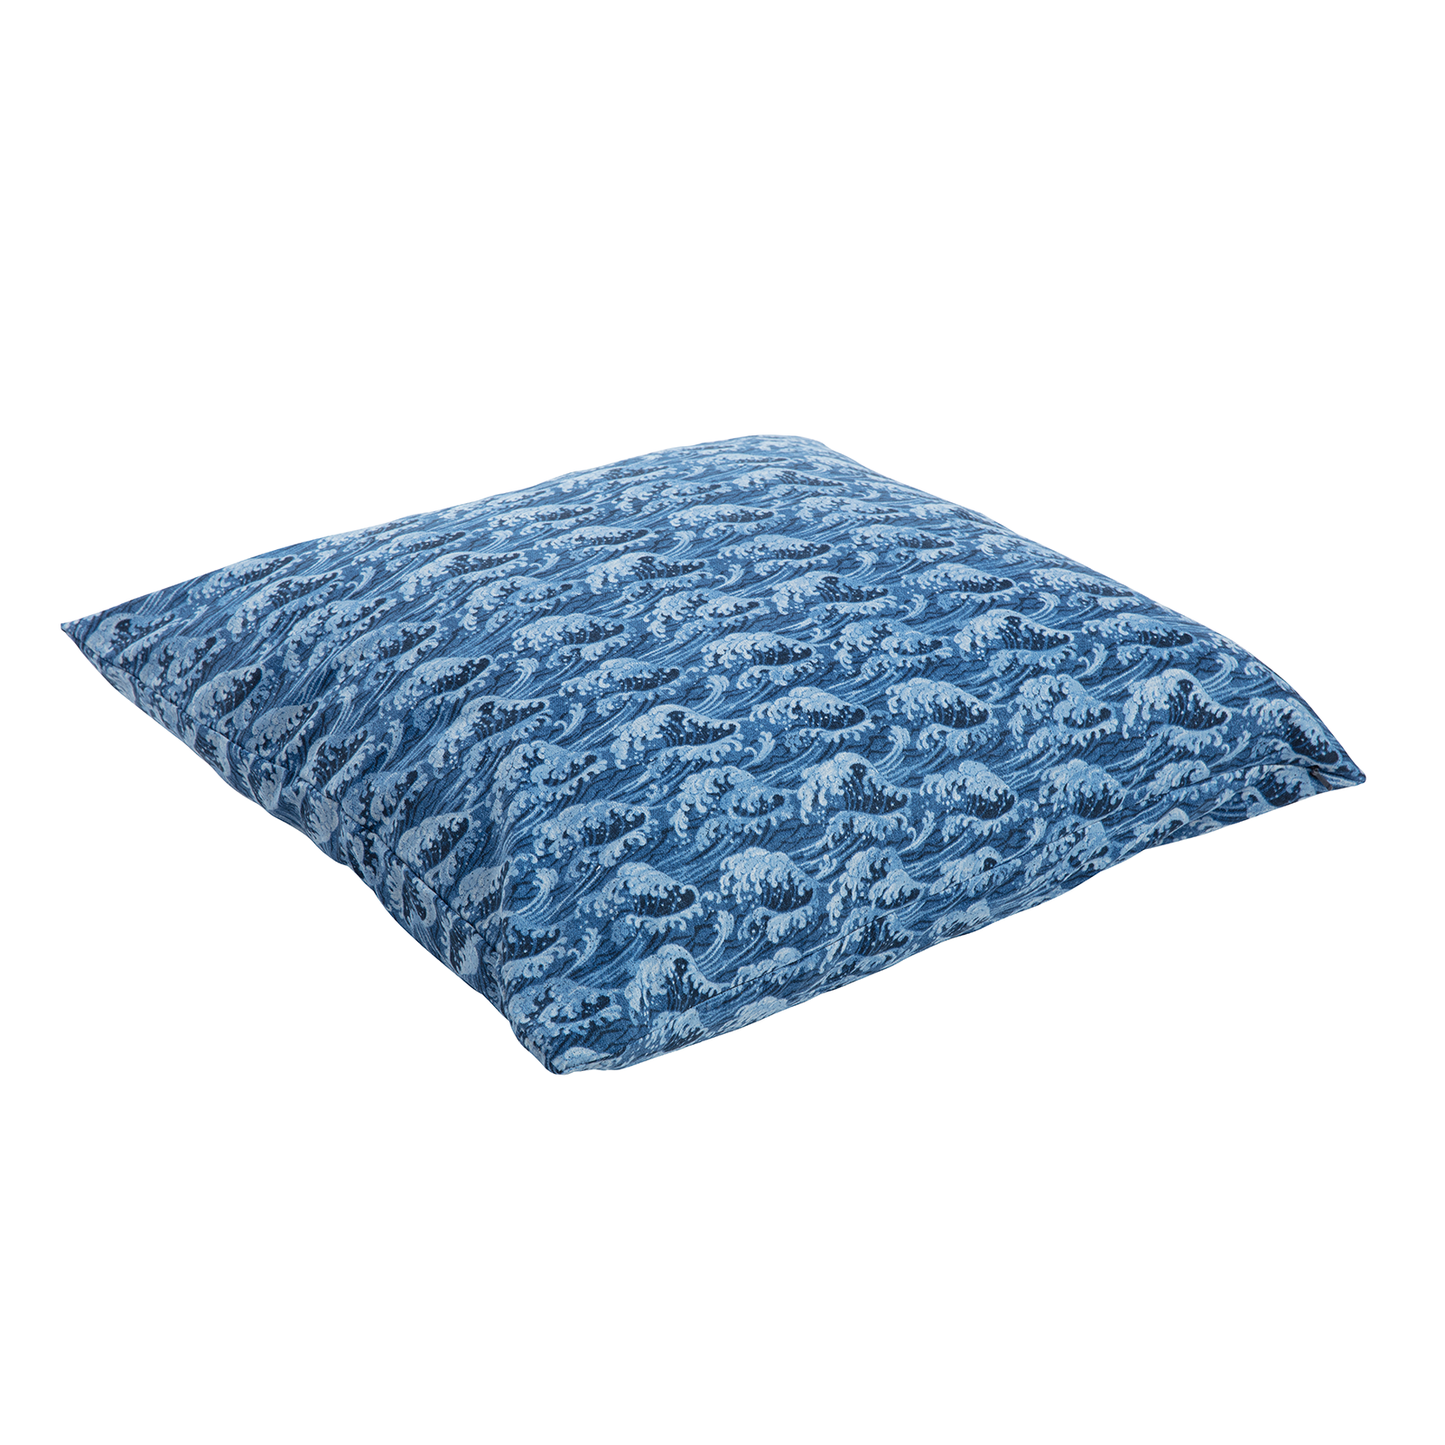 J-Life Jumbo Tidal Wave Blue Zabuton Floor Pillow